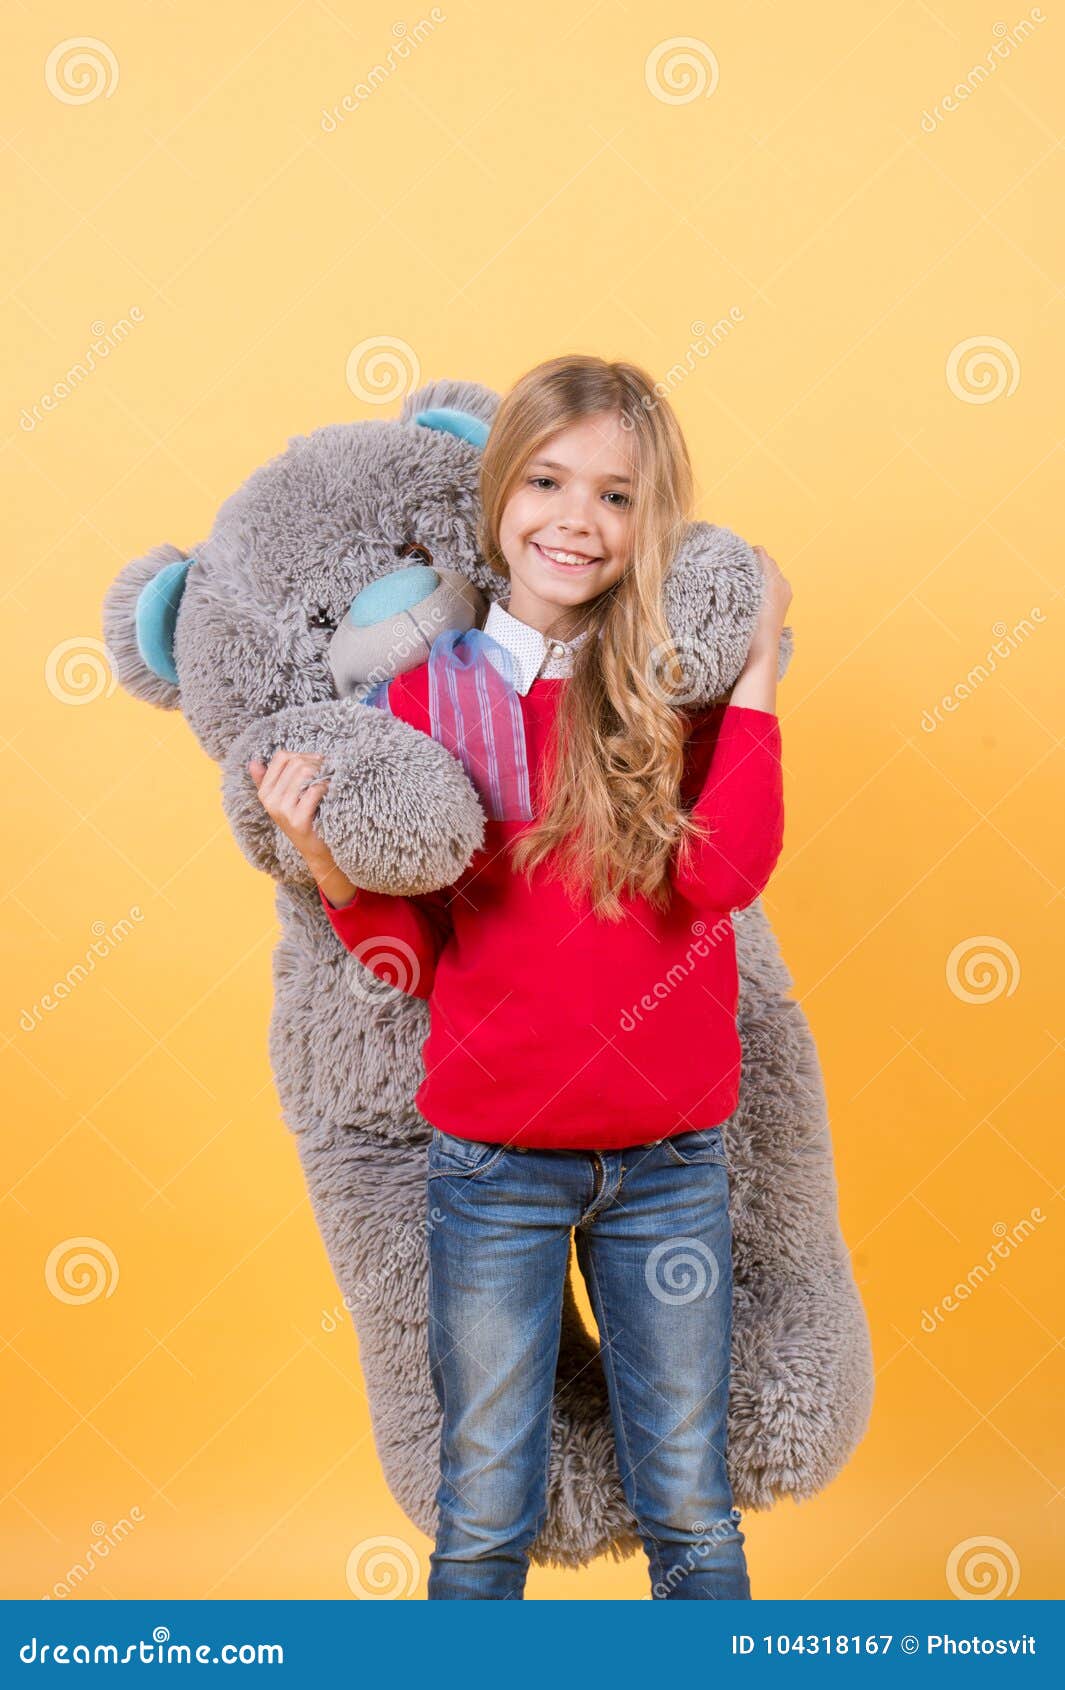 Girl Hug Big Teddy Bear on Orange Background Stock Image - Image of ...